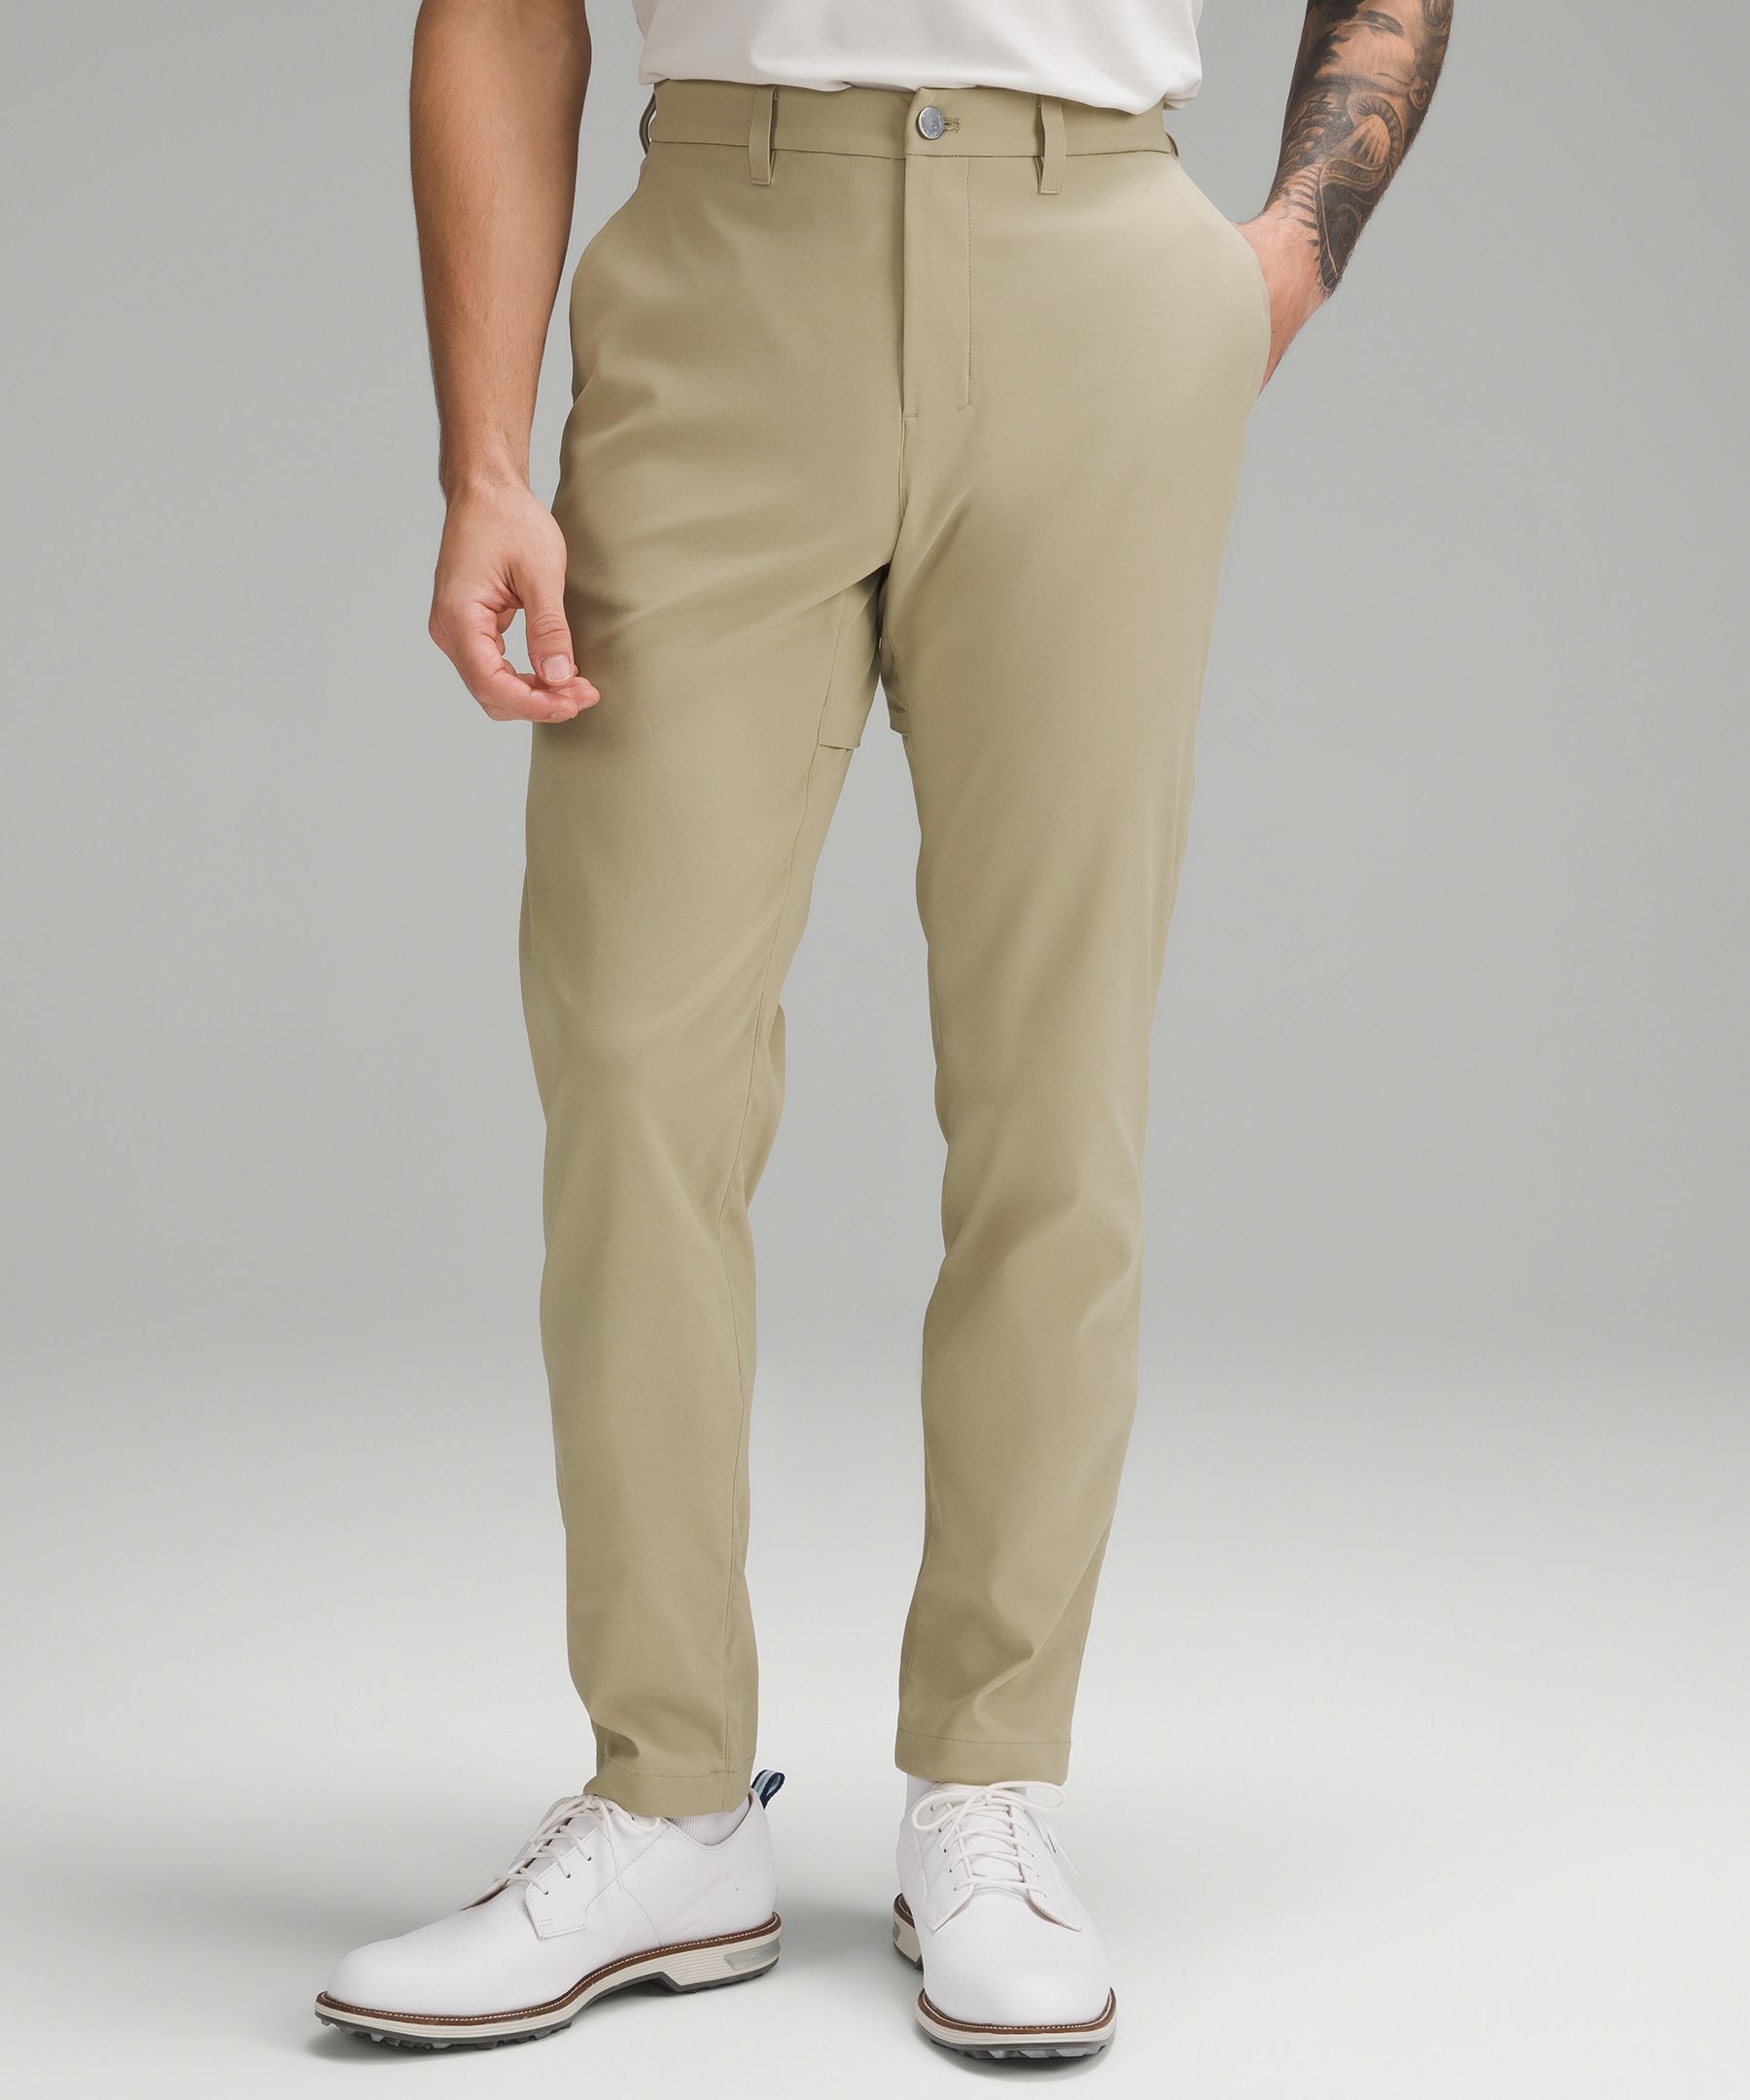 Lululemon Abc Slim-fit Golf Trousers 34"l